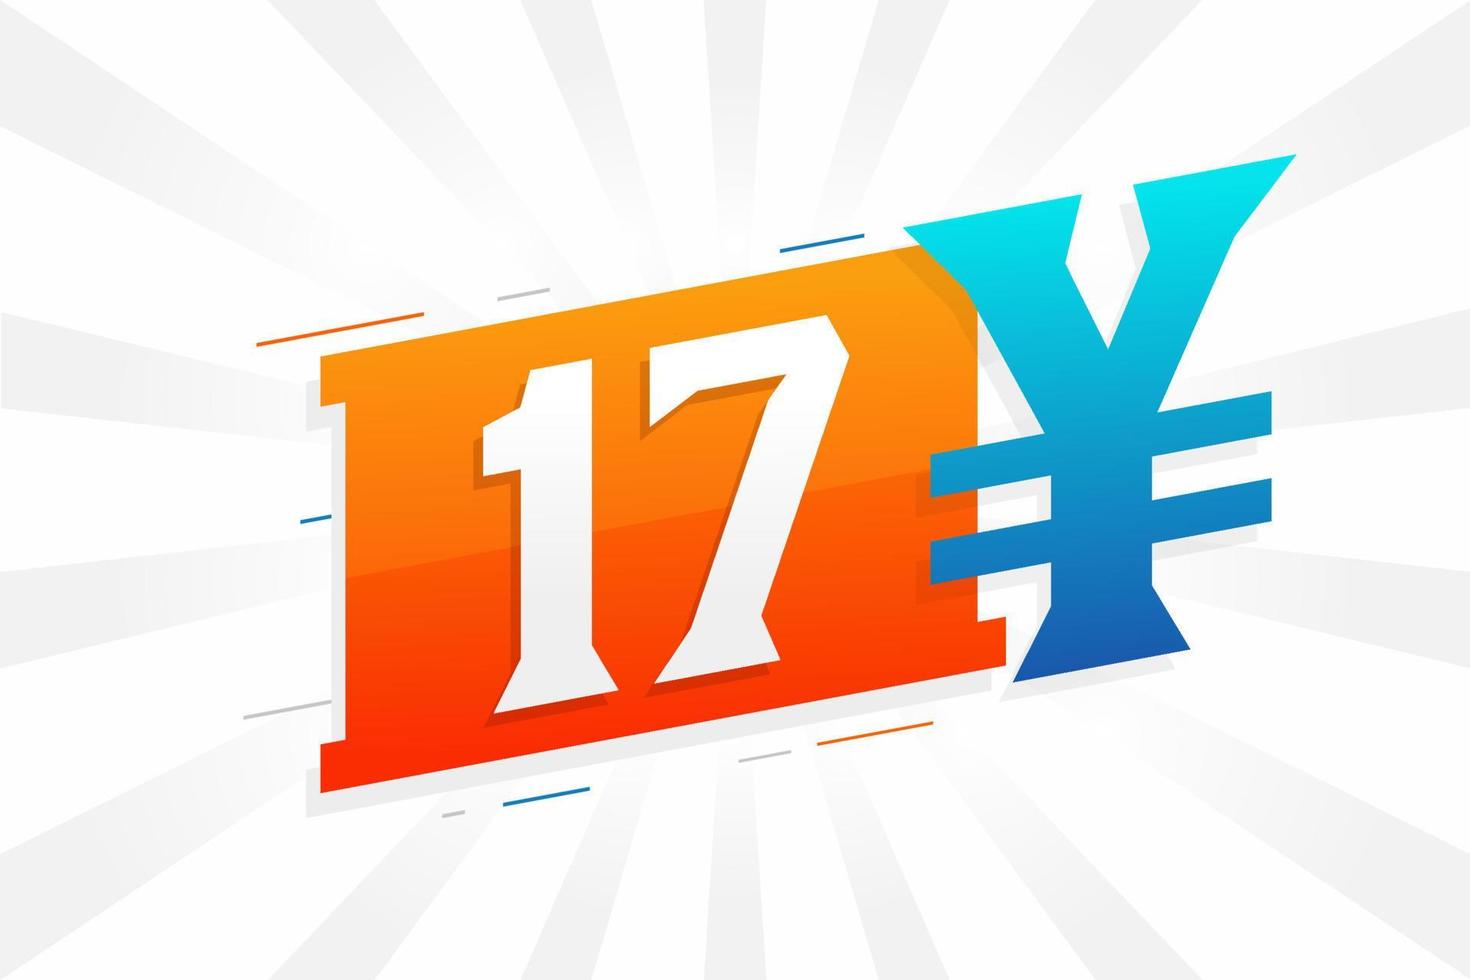 Símbolo de texto de vetor de moeda chinesa de 17 yuan. vetor de estoque de dinheiro de moeda japonesa de 17 ienes